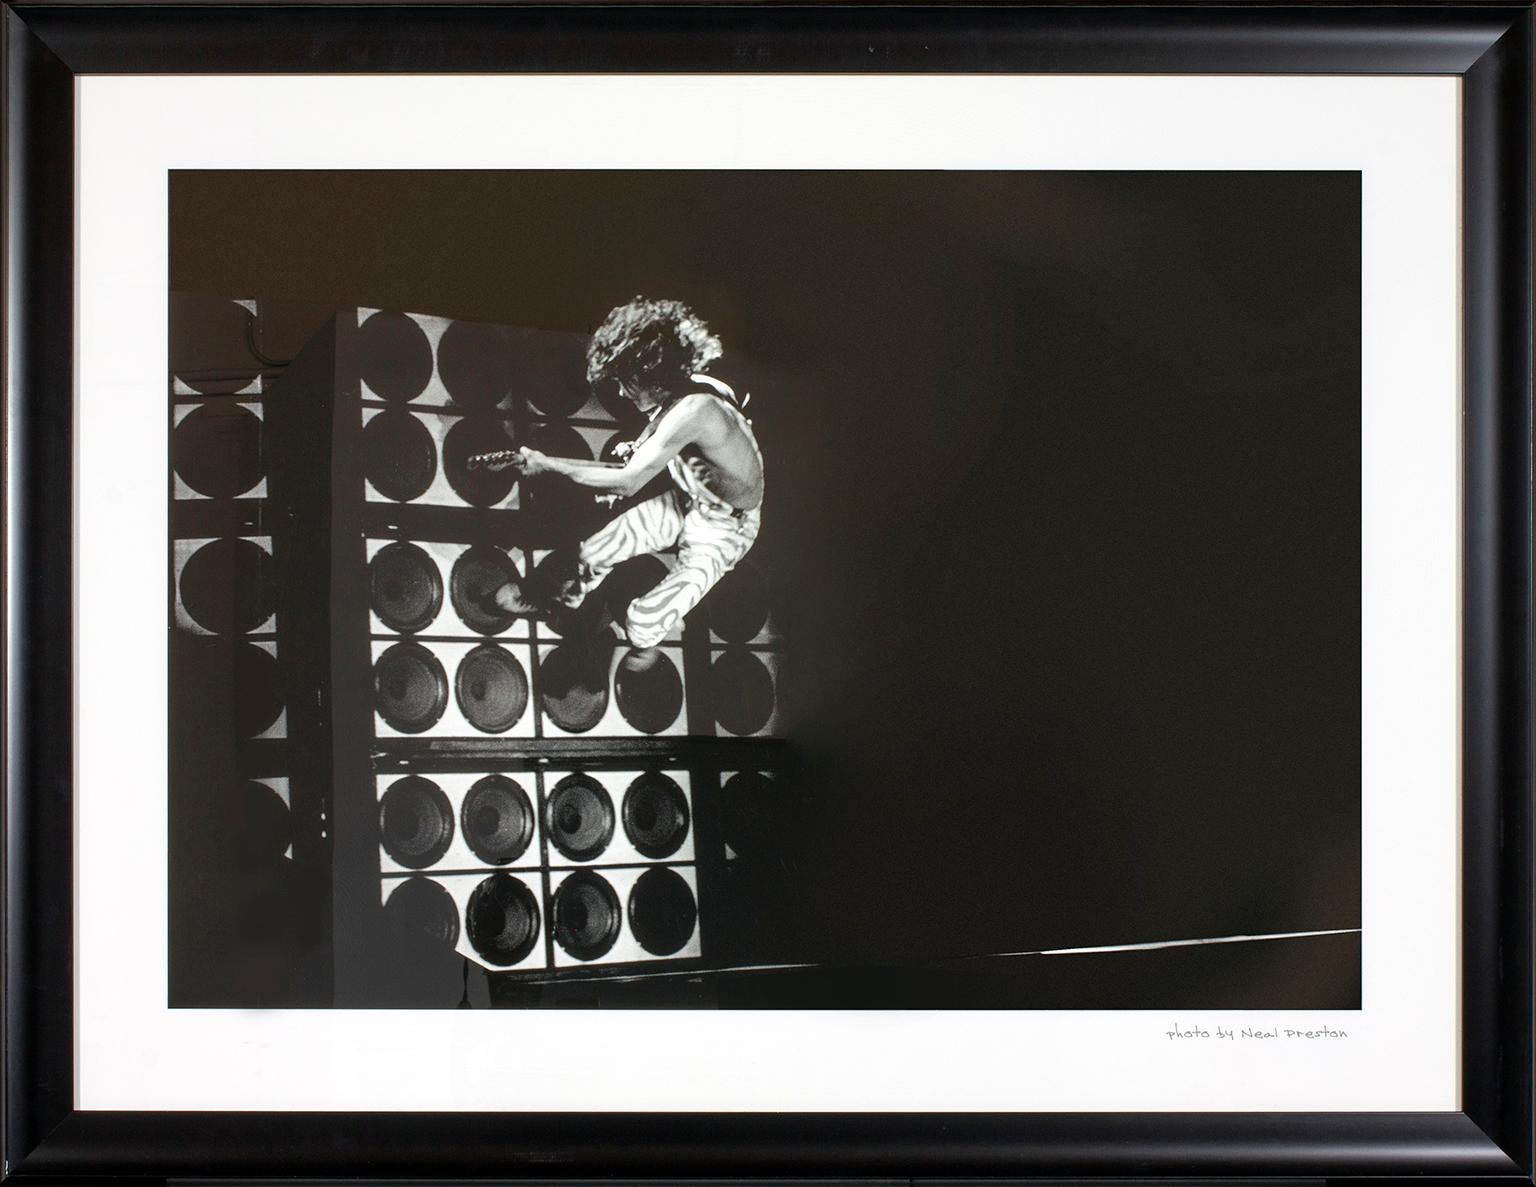 Fotografía "Eddie Van Halen Wall Jump" de Neal Preston. Foto de Neal Preston escrita a mano en la esquina inferior derecha de la parte delantera. Esta fotografía enmarcada se expuso anteriormente en una habitación de huéspedes del Hard Rock Hotel &